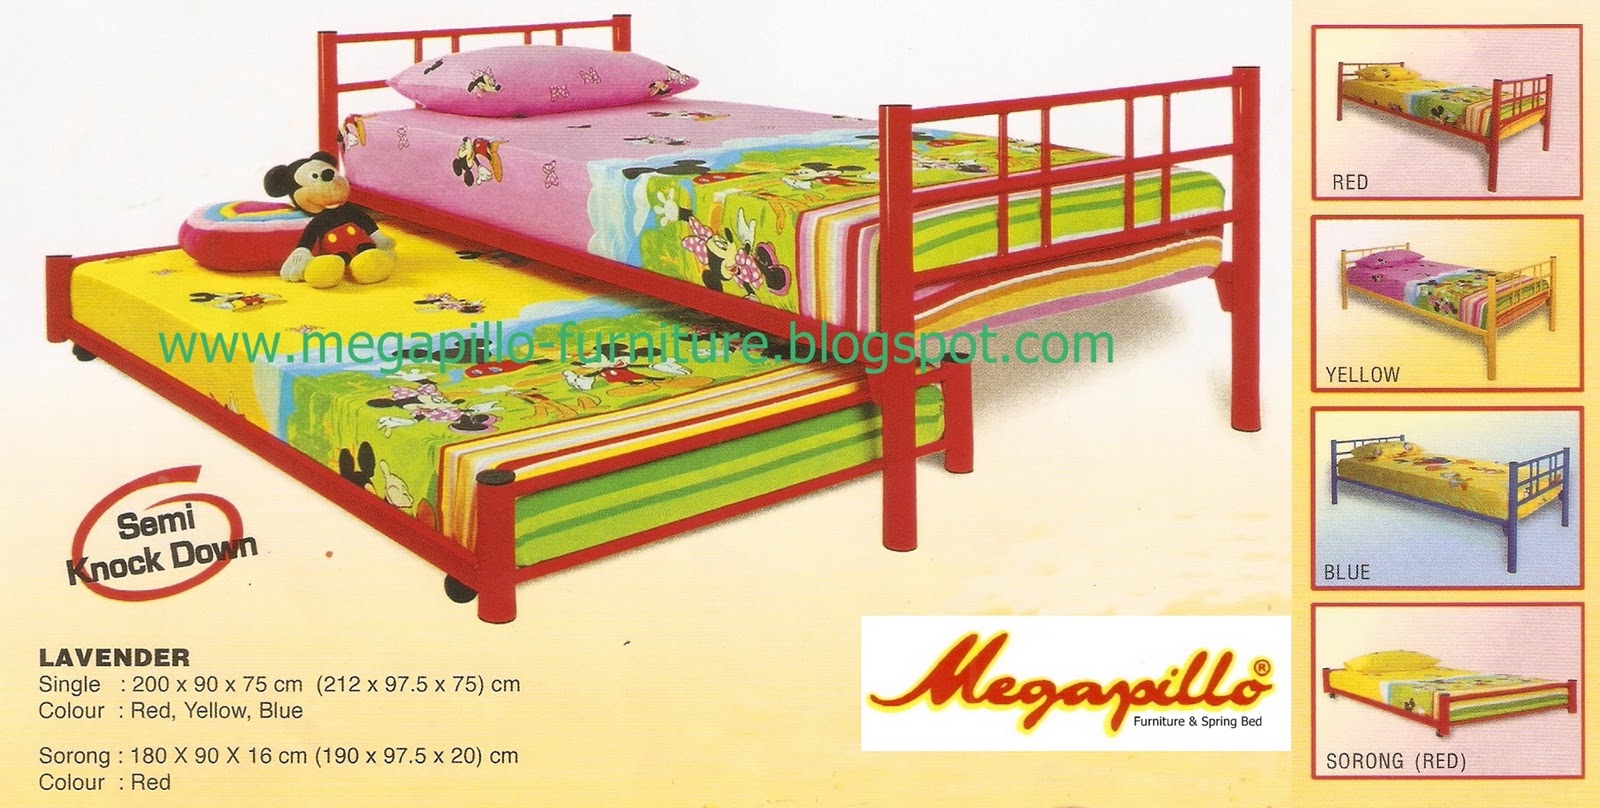 Megapillo Furniture Spring Bed Online Shop Ranjang Besi  